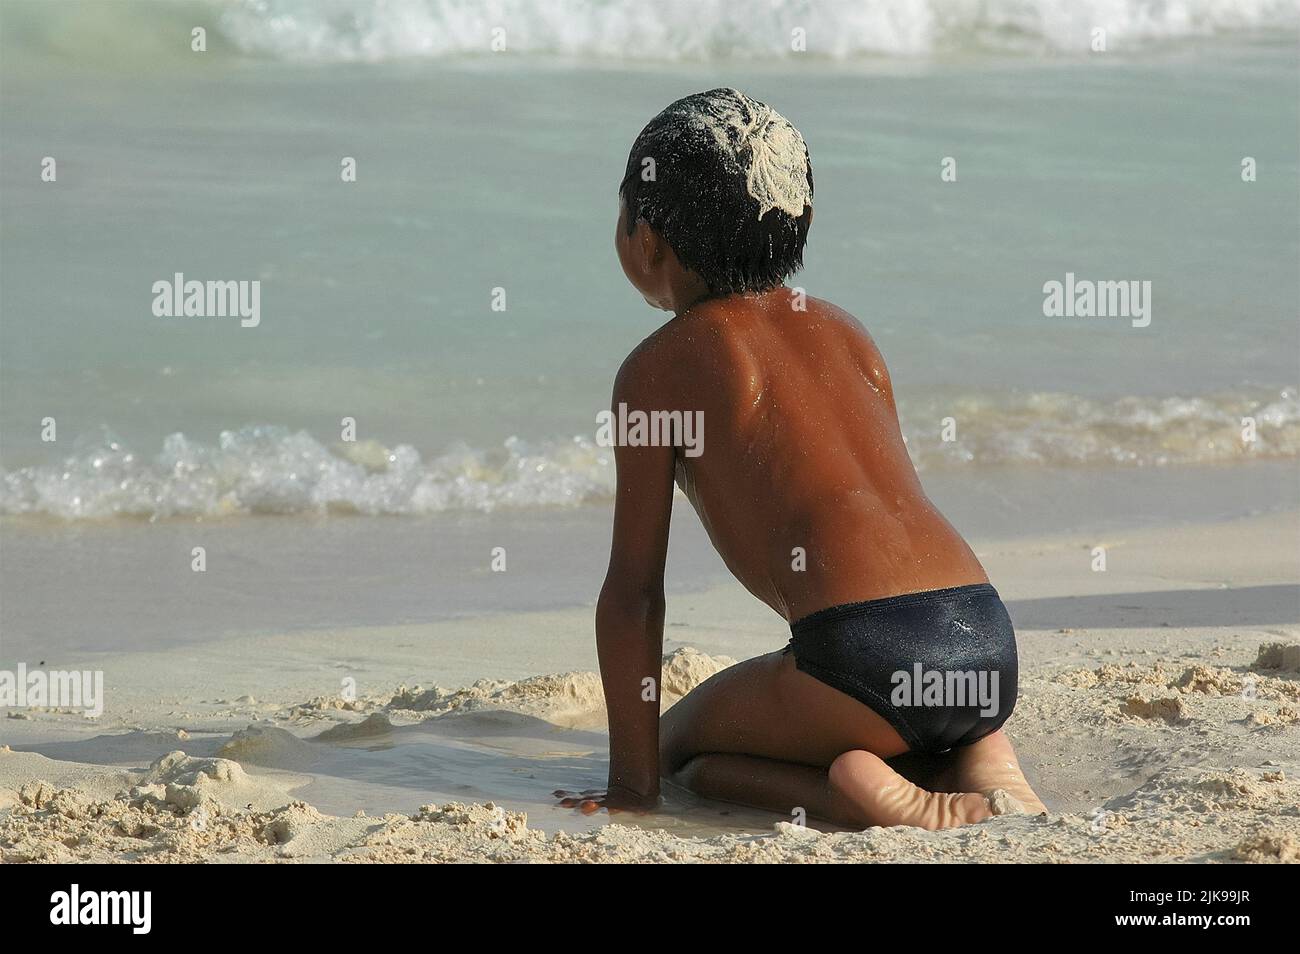 Un adolescente mexicano irreconocible es jugado por el mar con arena en su cabello en un día de verano Foto de stock